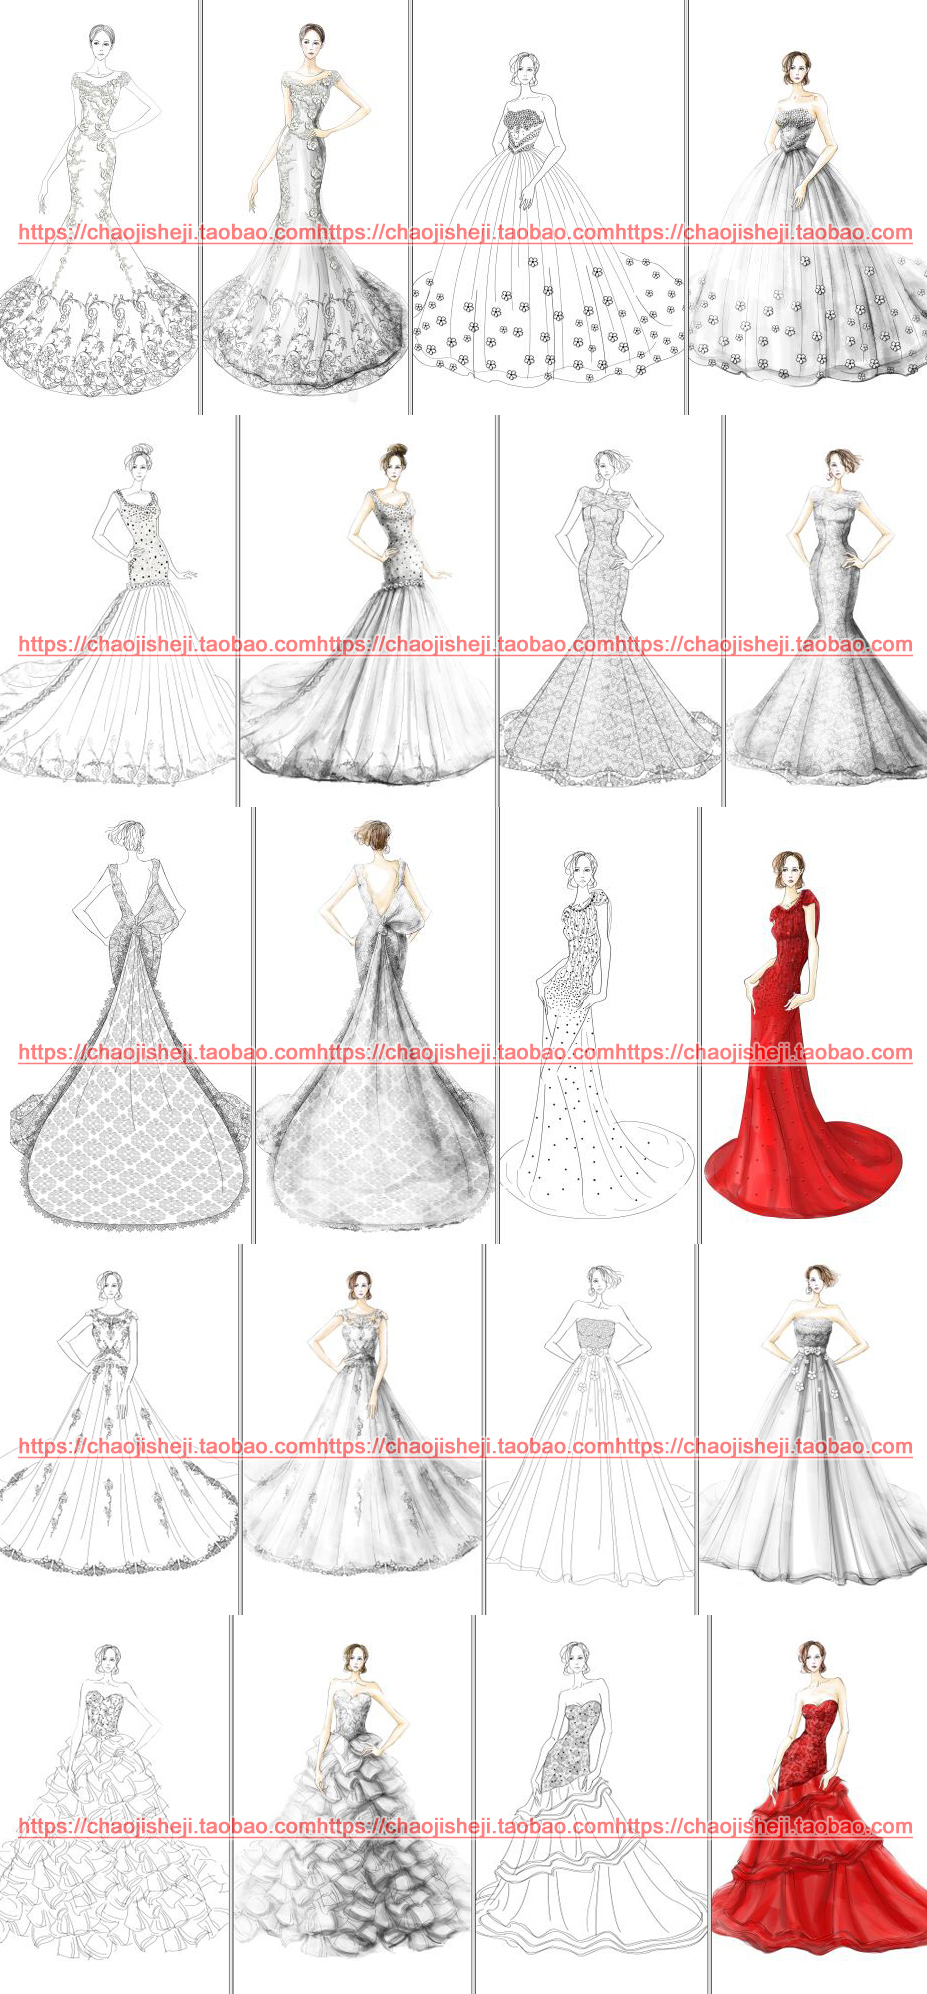 高清女款式婚纱模板礼服裙装宴会设计效果图素材彩色线稿PS手绘画